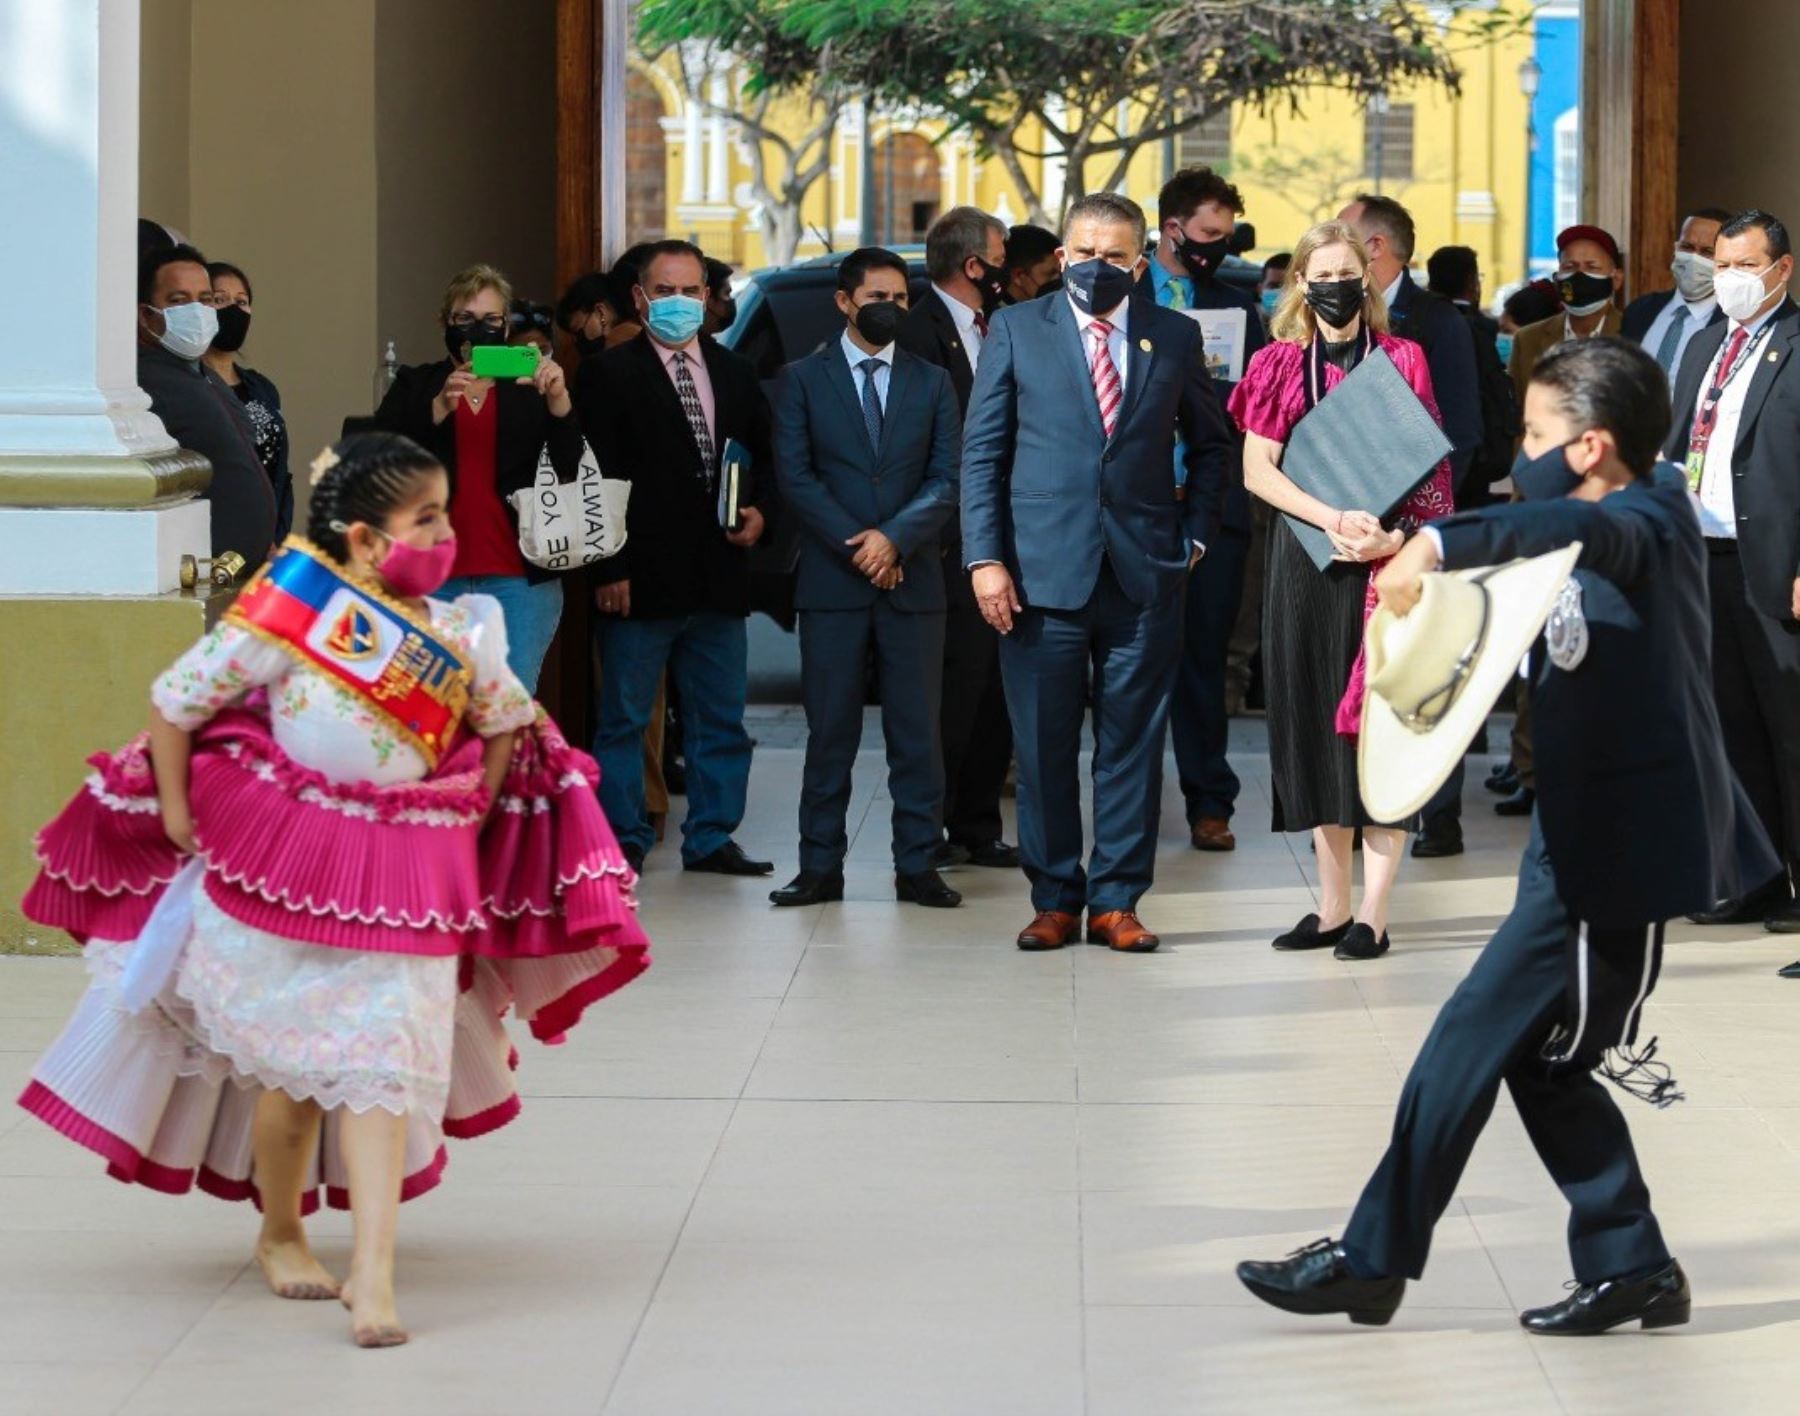 La marinera norteña, el tradicional baile de Trujillo vuelve  a los escenarios y en La Libertad se preparan para organizar el Festival Nacional Estudiantil que se realizará en noviembre.